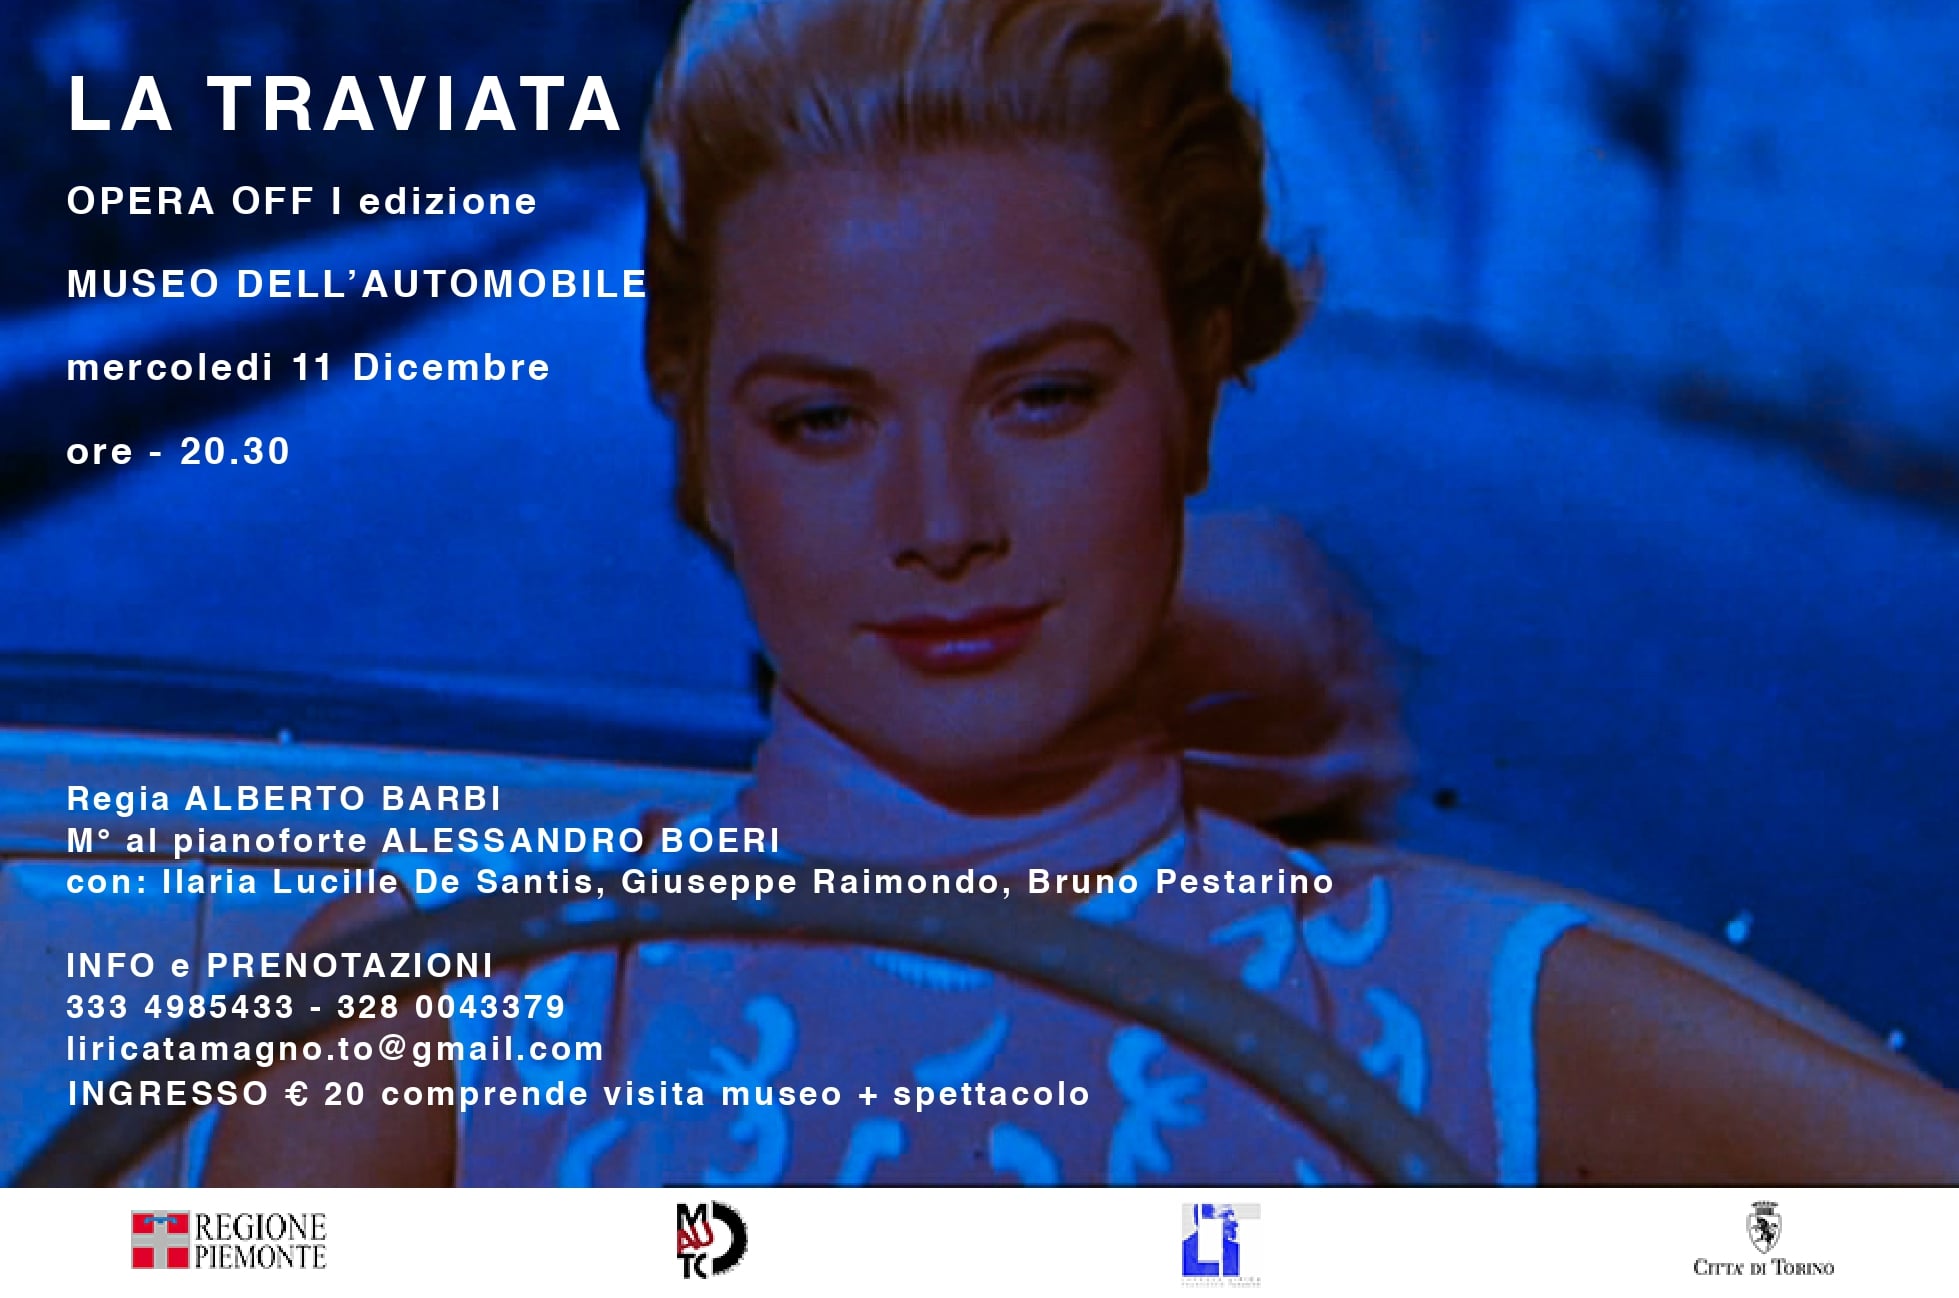 Stasera “La traviata” al Museo dell’Automobile di Torino